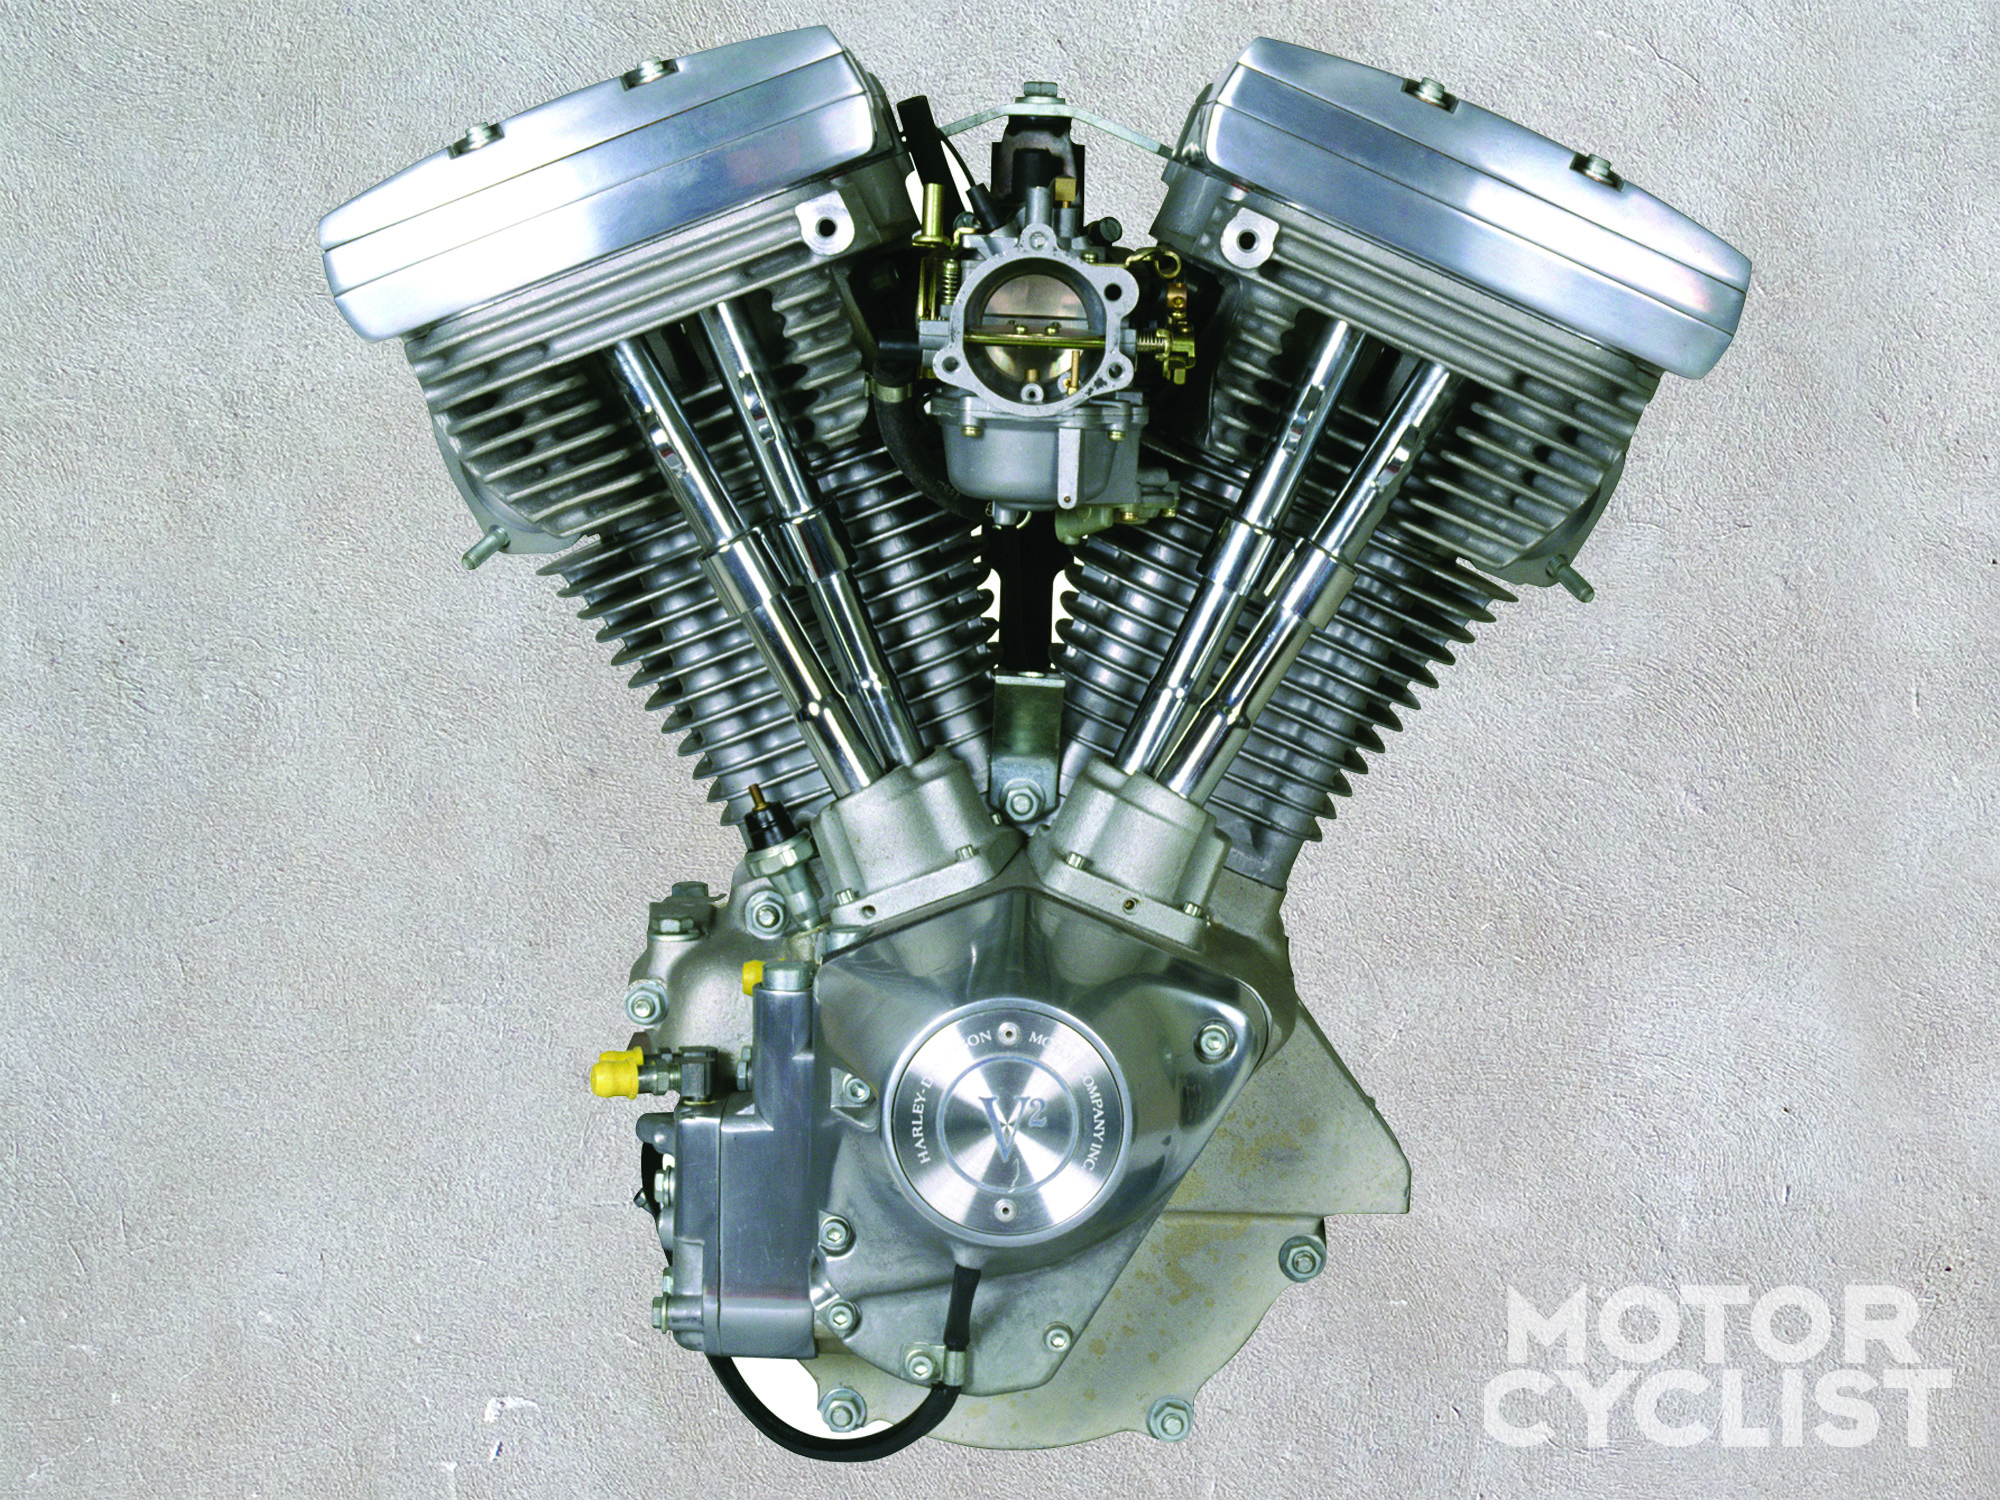 Мотор байка. Двигатель Харлей Дэвидсон Эволюшн. Двигатель Harley Davidson Твин Кам. Харлей Дэвидсон двигатель Twin-cam. V образный двигатель Харлей Дэвидсон.